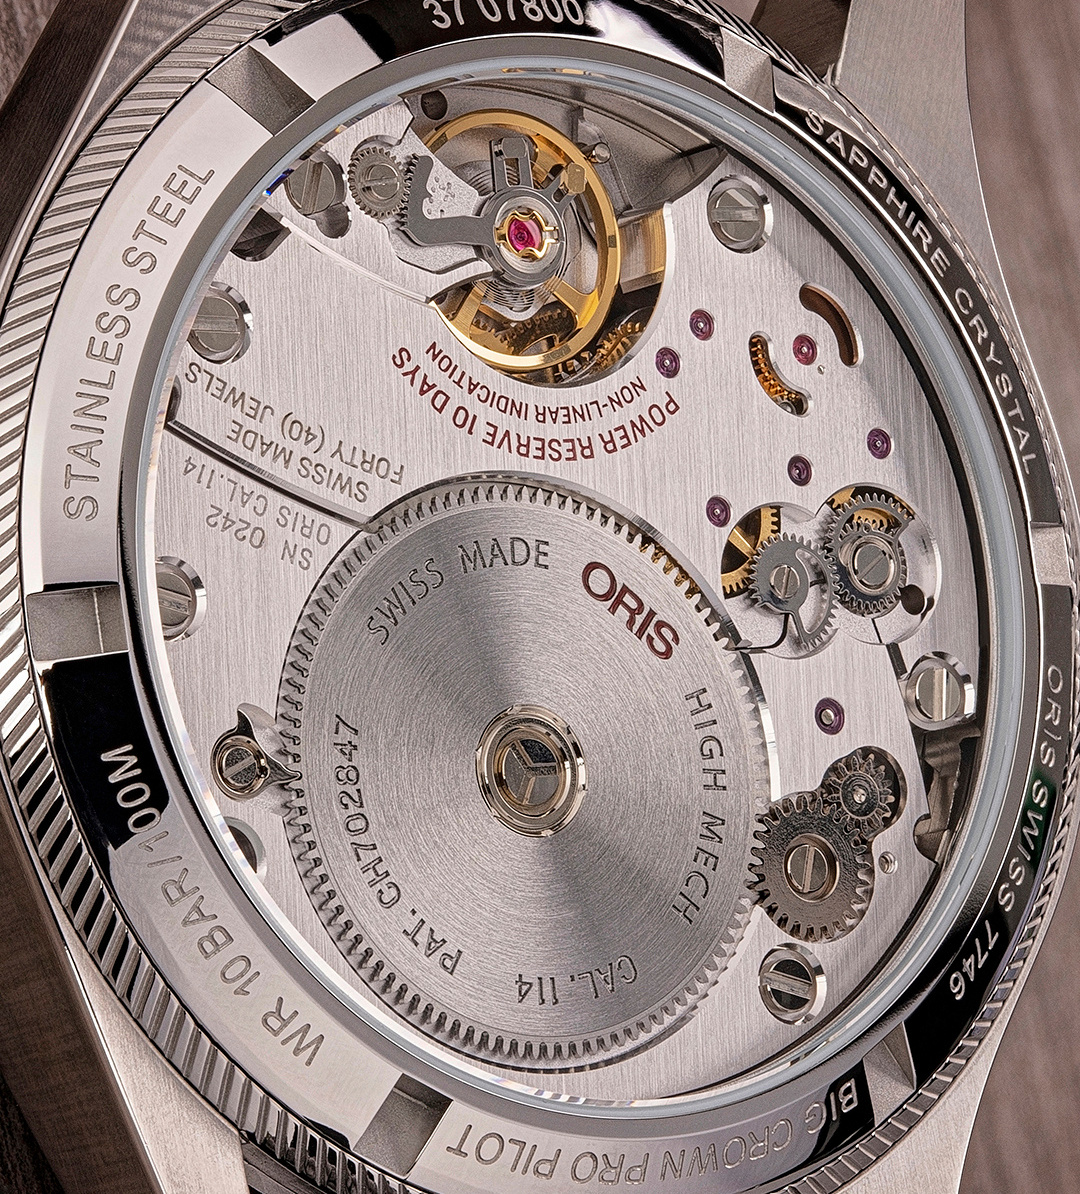 ORIS PROPILOT Мужские швейцарские часы, механический с ручным заводом механизм, сталь, 44 мм